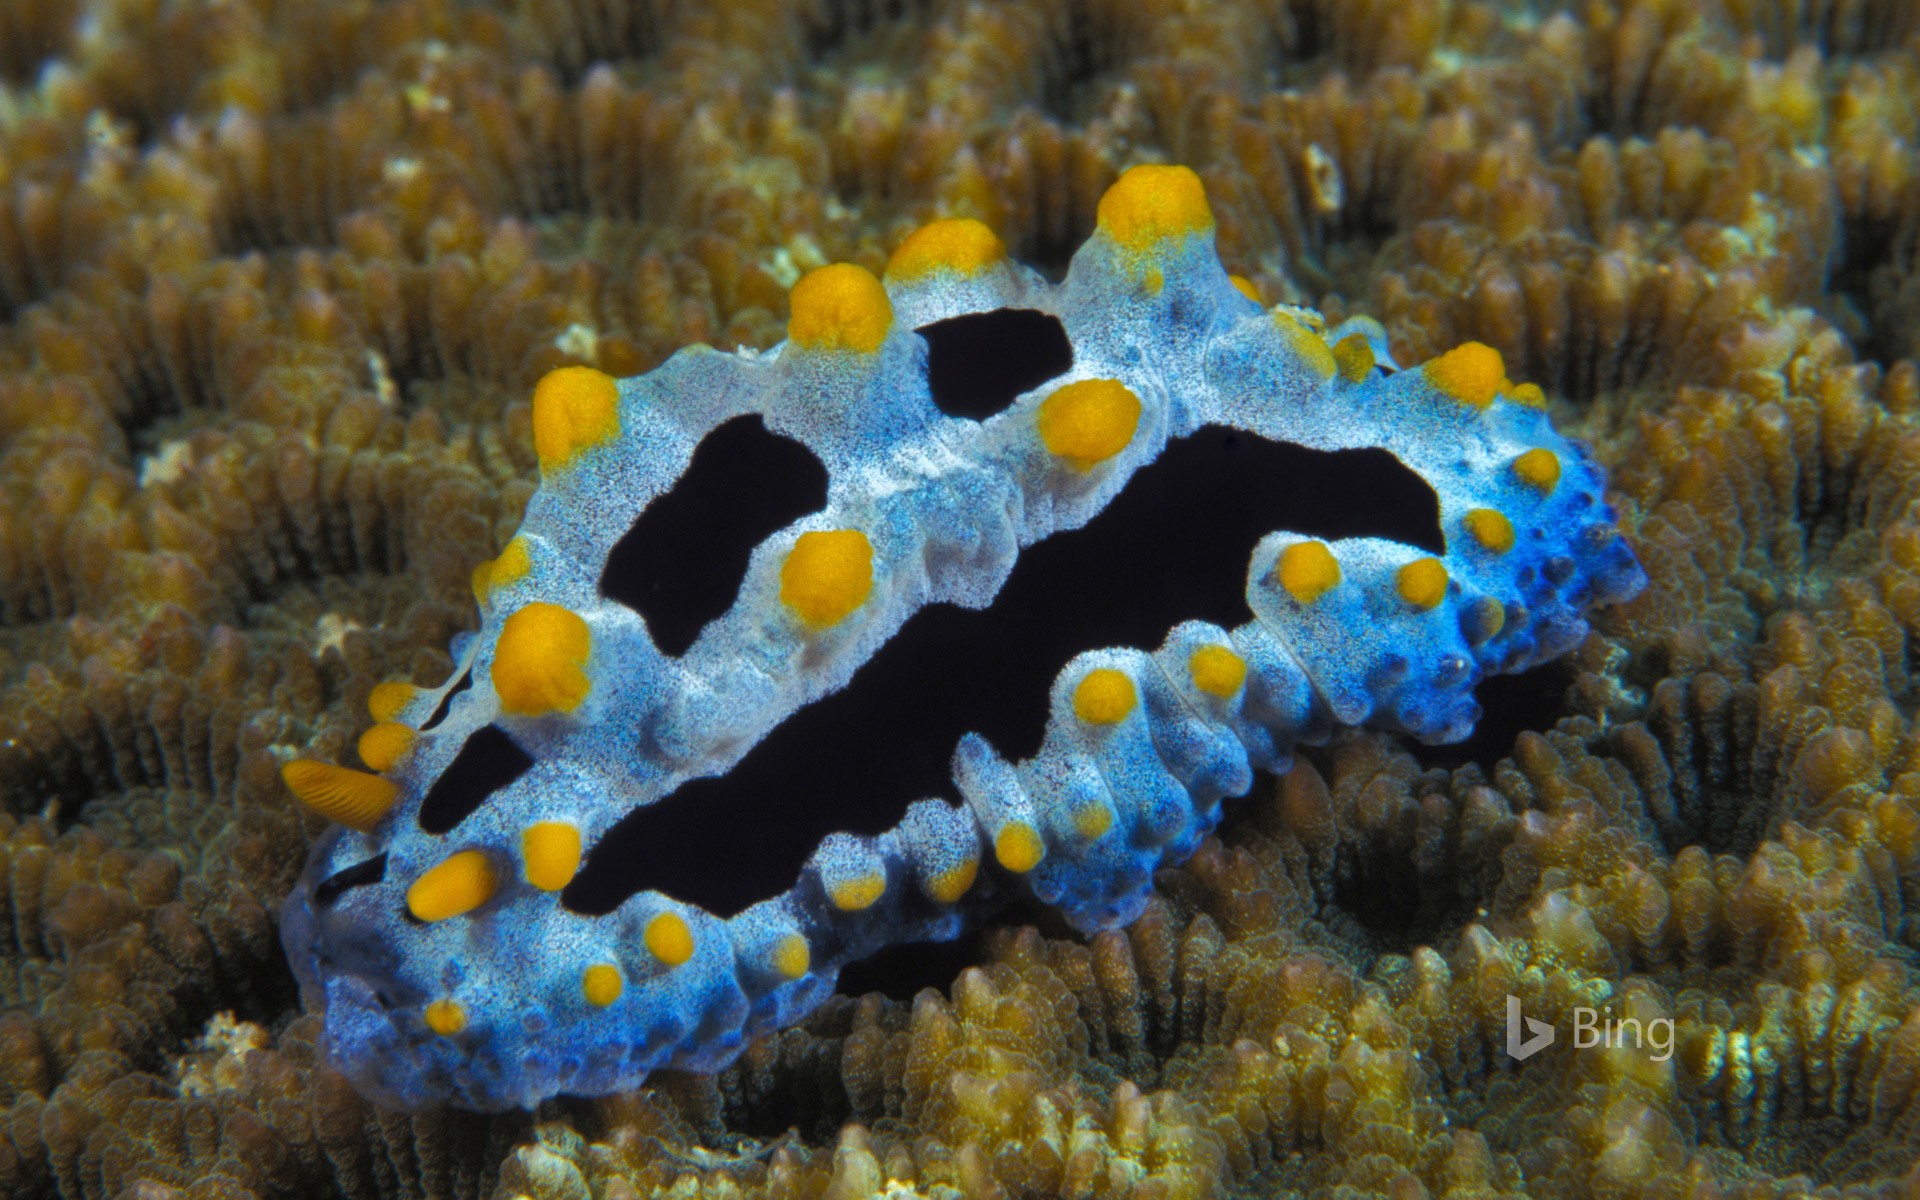 Phyllidia coelestis, a sea slug